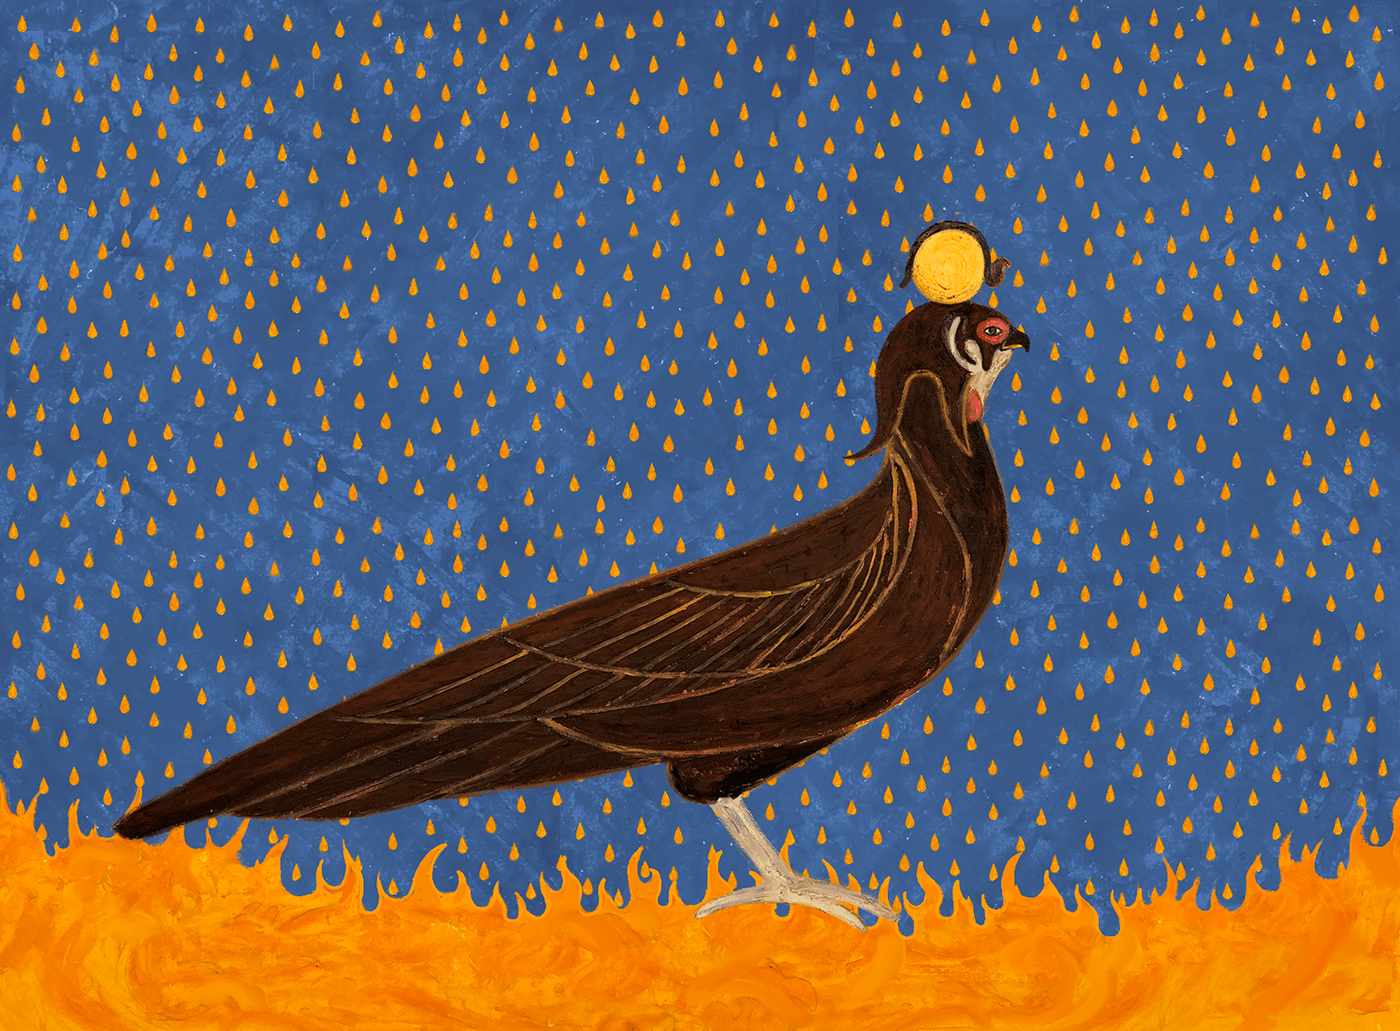 Bird standing under rain.